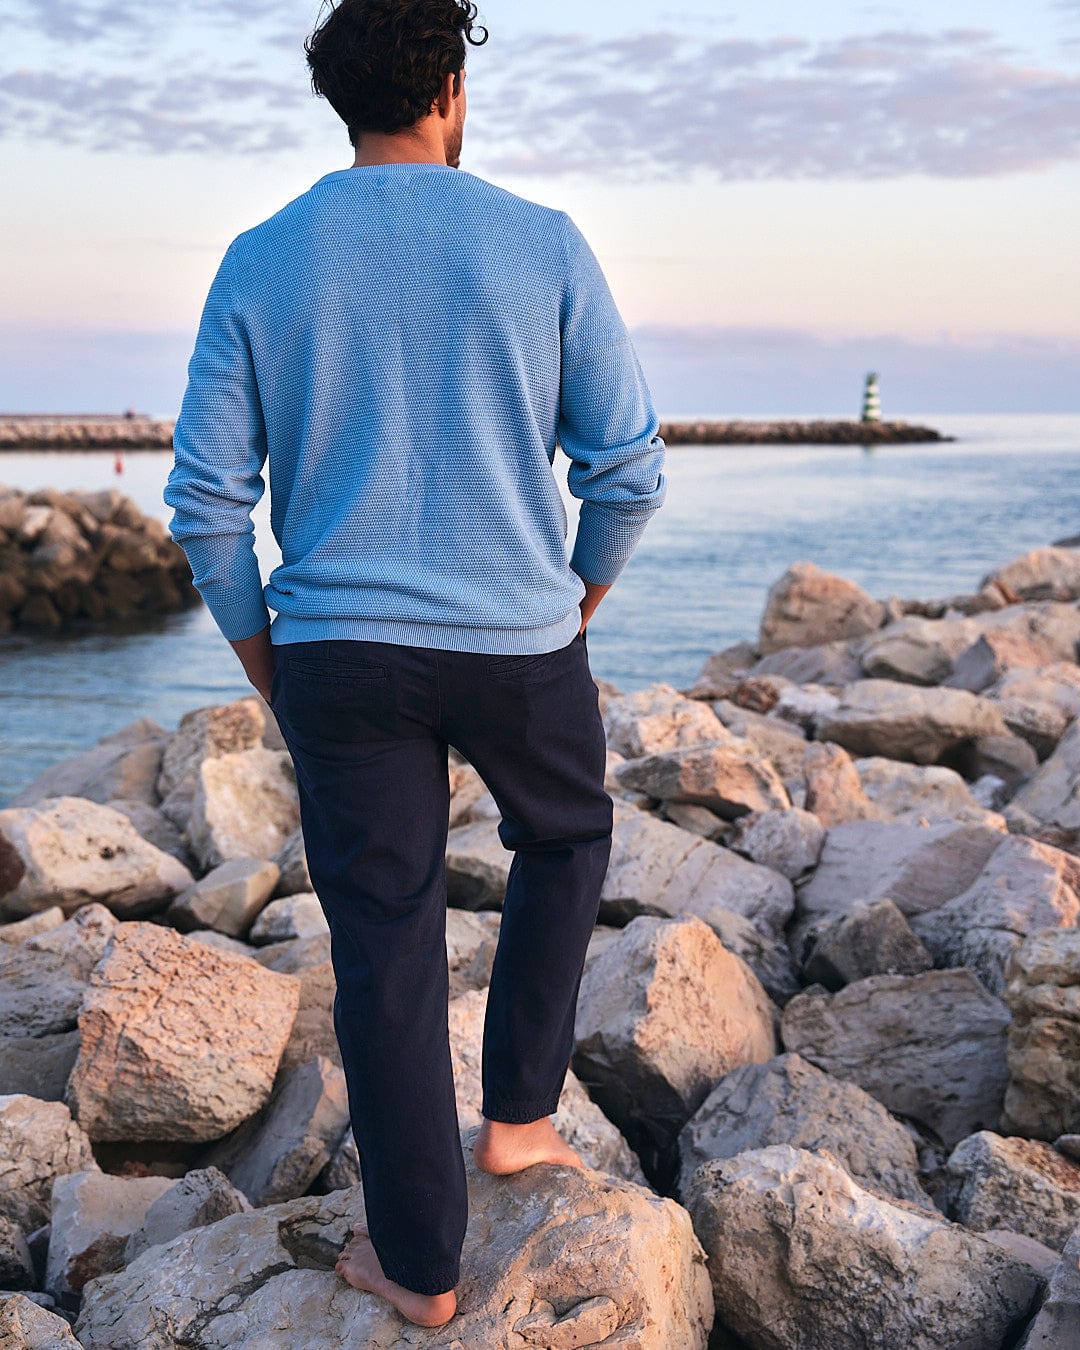 A man standing on rocks near the ocean wearing Saltrock's Meddon - Mens Twill Trouser in Blue.